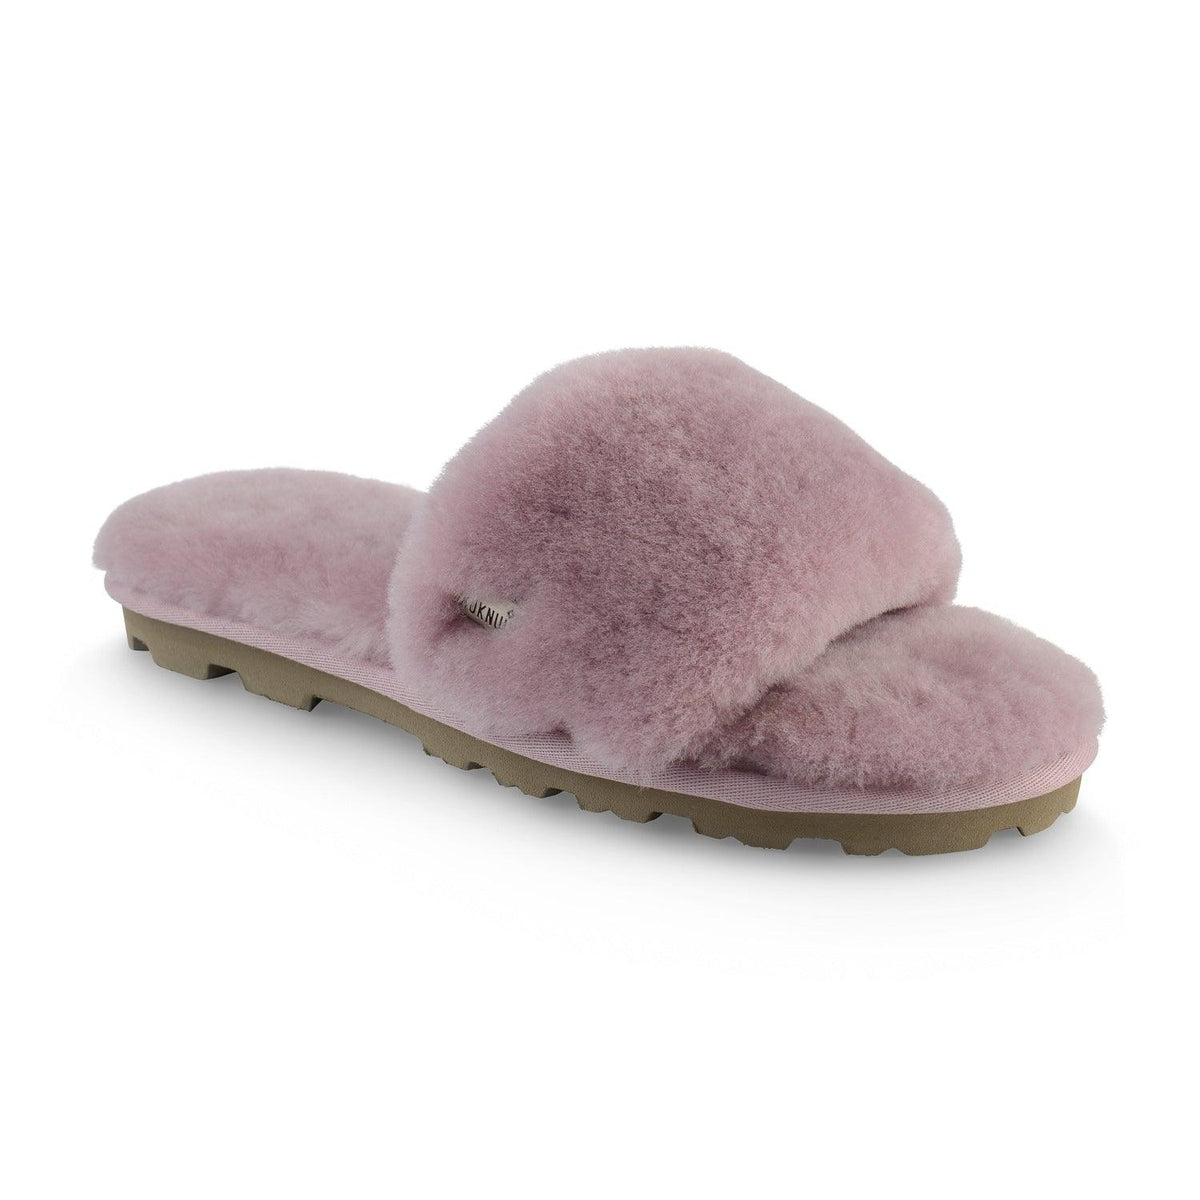 Nuknuuk Slide20 Women's Sandal (Dusty pink) | Size 6-11 | Sheepskin Lining